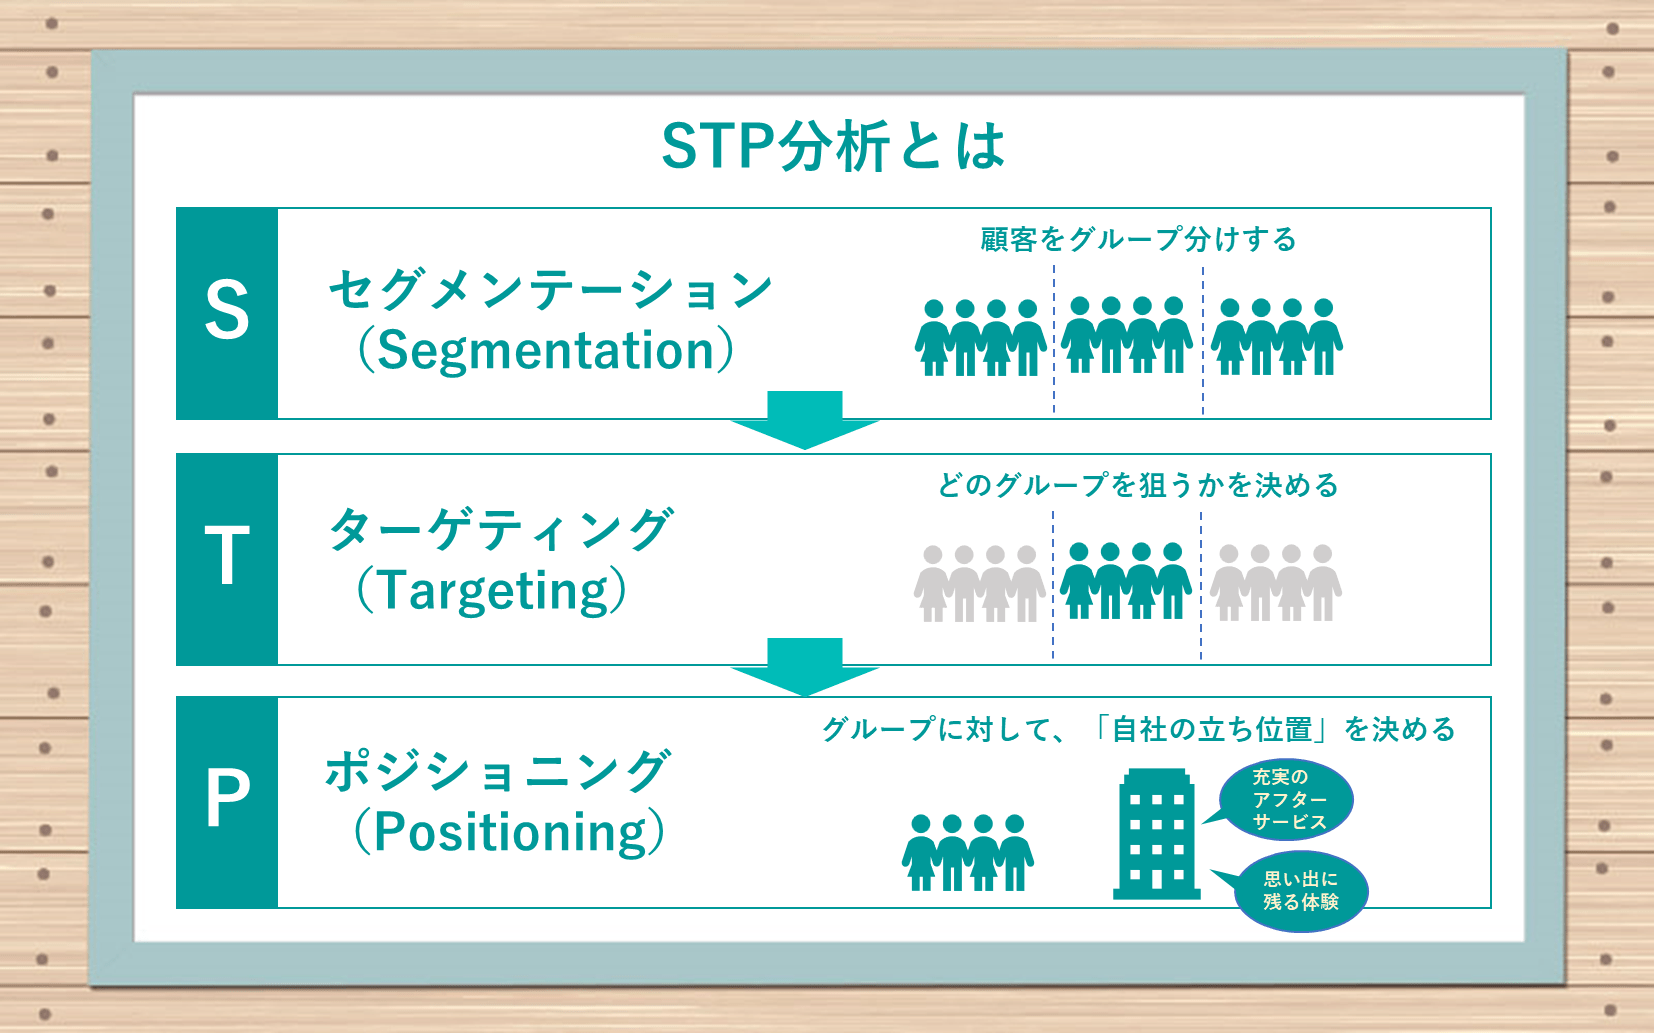 STP分析とは　●セグメンテーション（Segmentation）：顧客をグループ分けする　●ターゲティング（Targeting）：どのグループを狙うかを決める　●ポジショニング（Positioning）：グループに対して、「自社の立ち位置」を決める